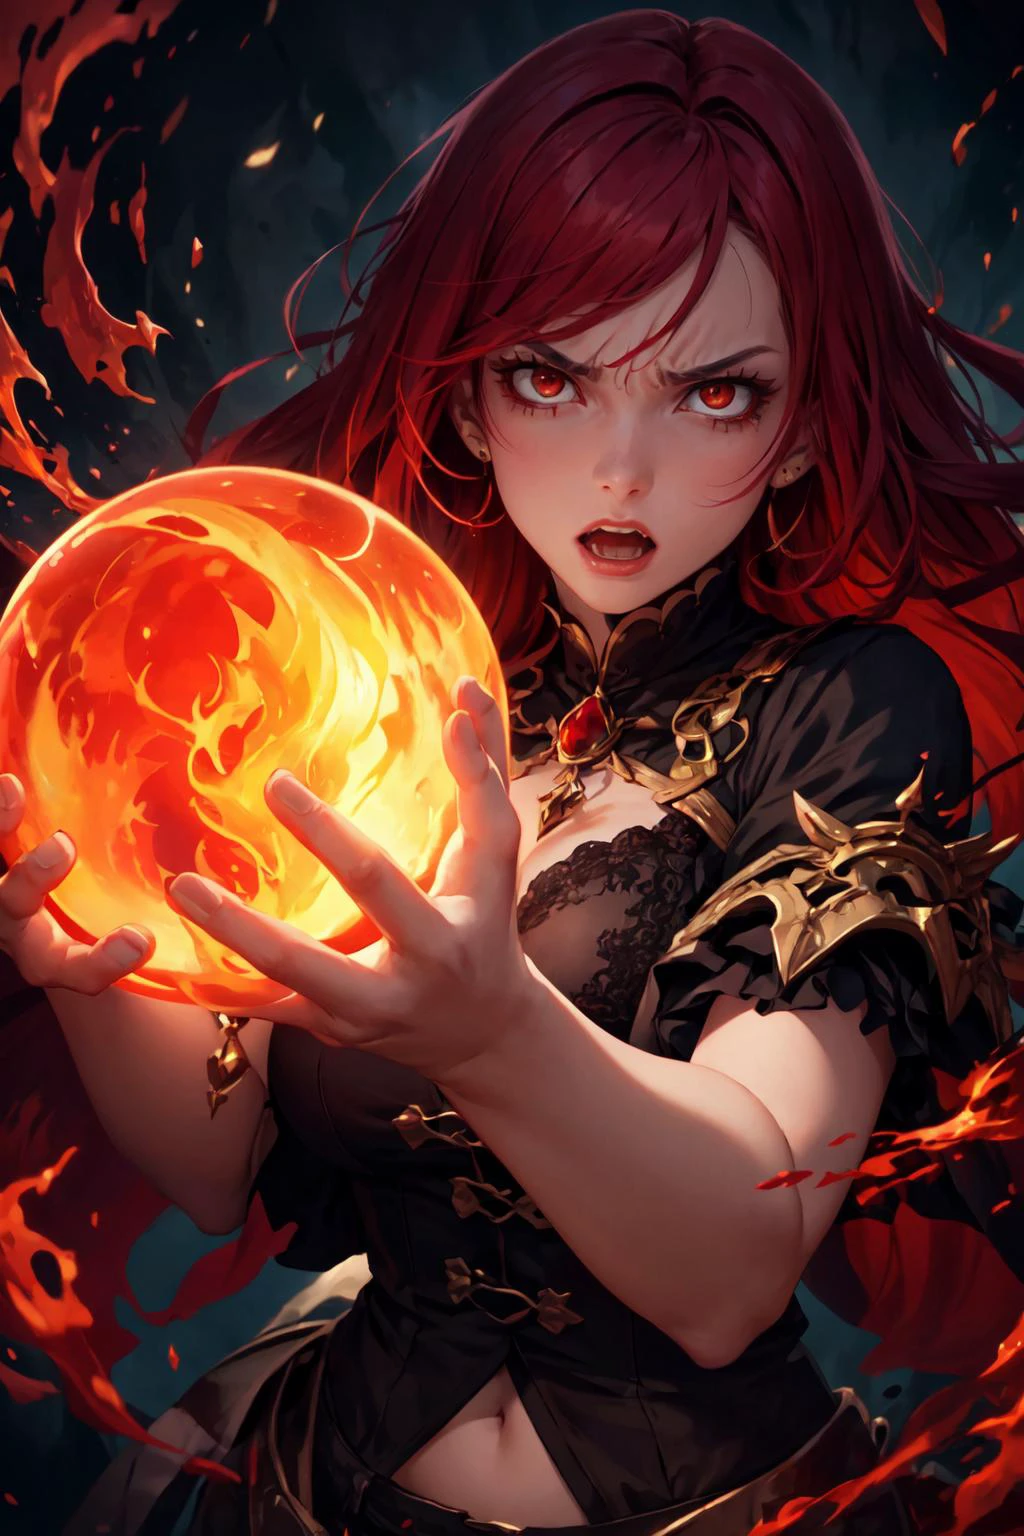 燃えるような赤い髪をした激怒した少女が水晶玉を見つめて悪魔の霊を召喚する., (高解像度, 非常に詳細な:1.2), 美的, 傑作, 